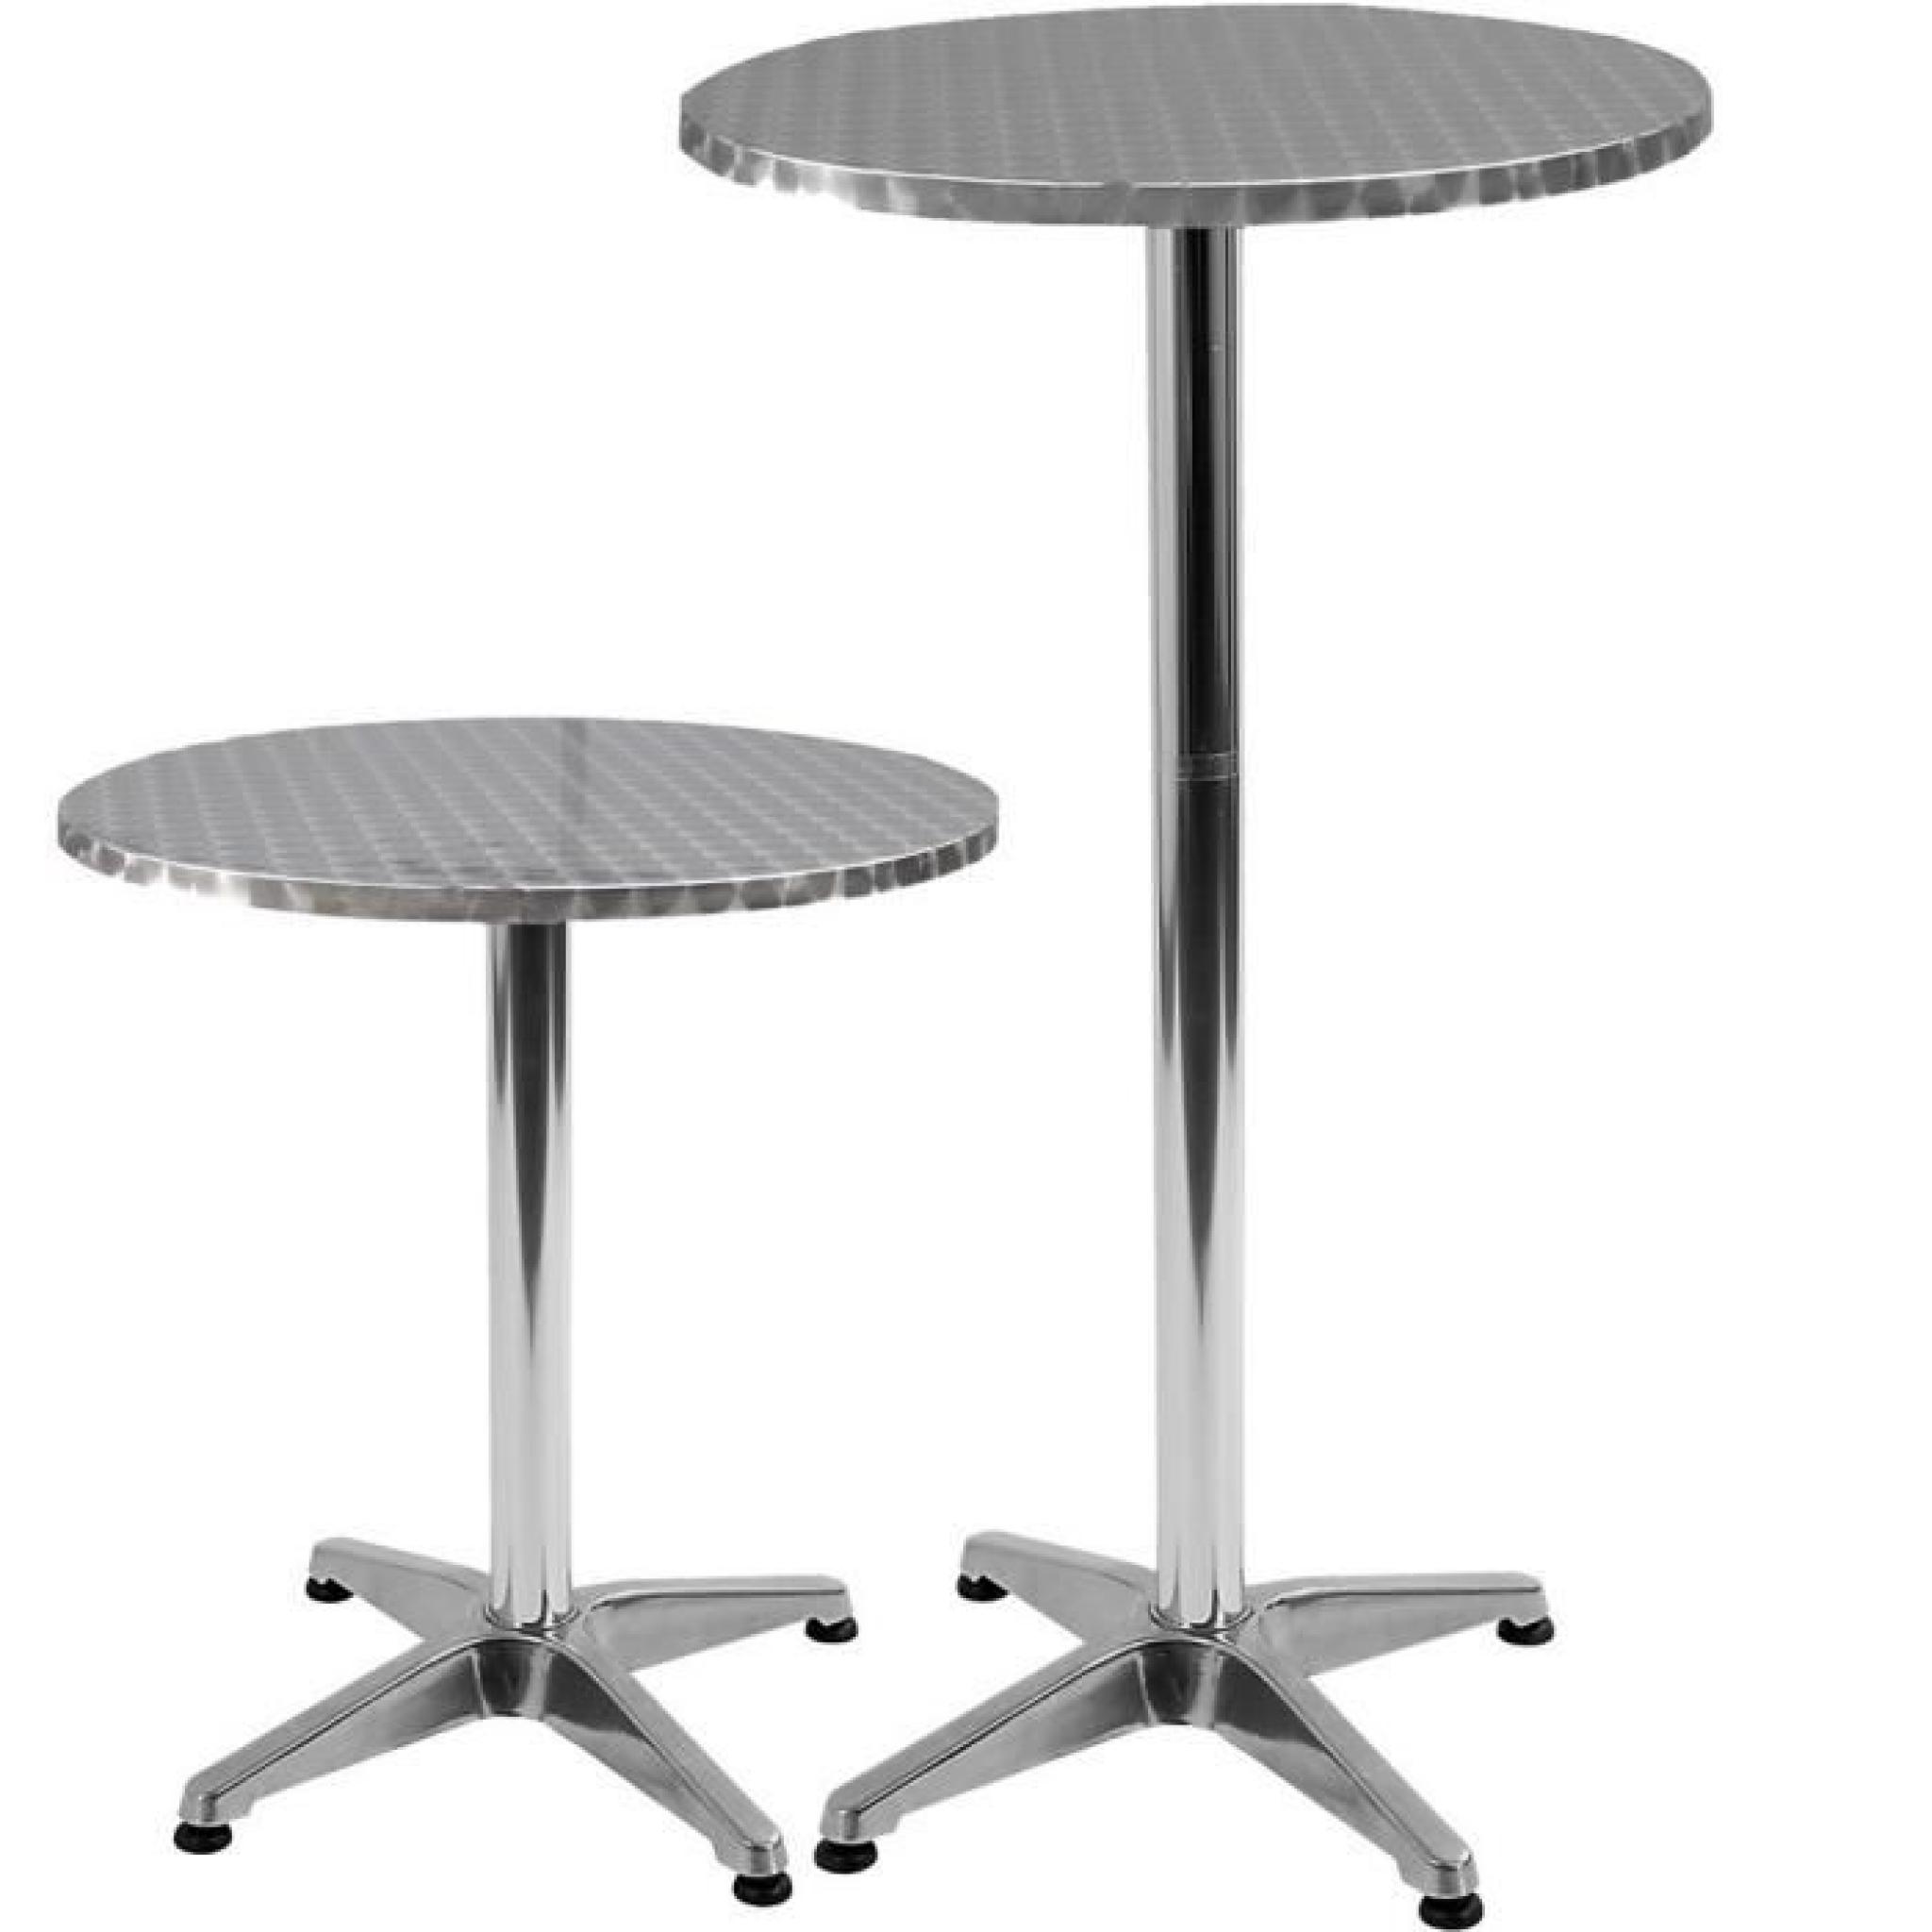 Table de bistrot - Ø 60 cm - 2 hauteurs réglables 70 ou 110 cm - acier inoxydable et aluminuim